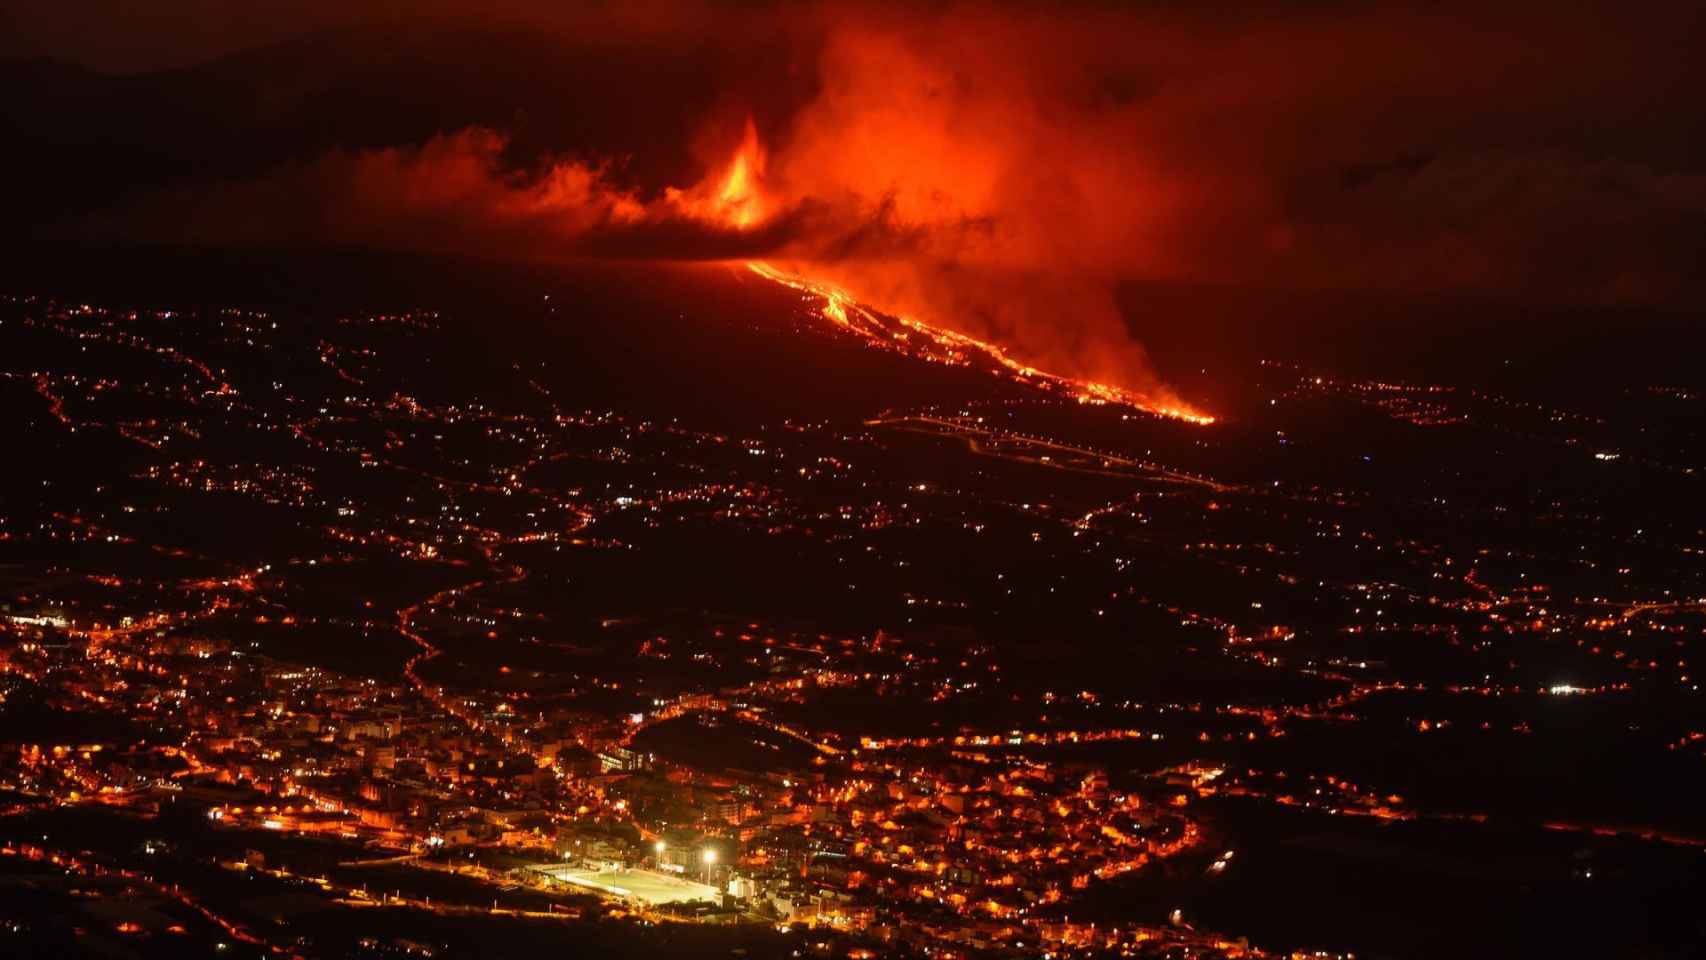 Vista de la colada de lava y del valle de Aridane desde el mirador de El Time, en La Palma.